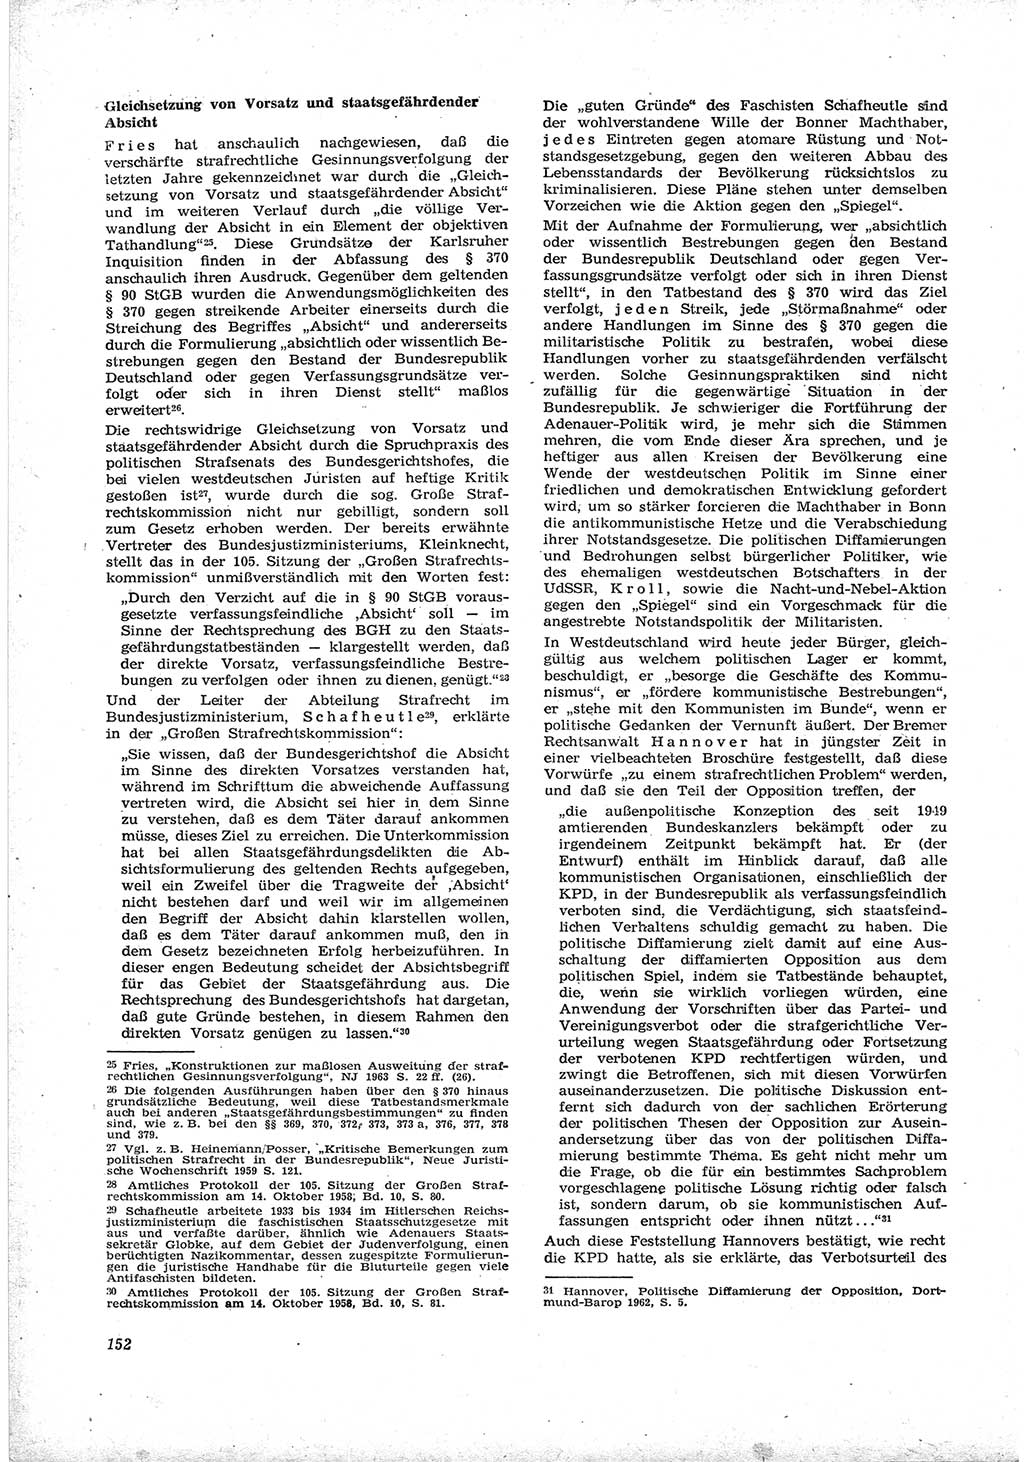 Neue Justiz (NJ), Zeitschrift für Recht und Rechtswissenschaft [Deutsche Demokratische Republik (DDR)], 17. Jahrgang 1963, Seite 152 (NJ DDR 1963, S. 152)